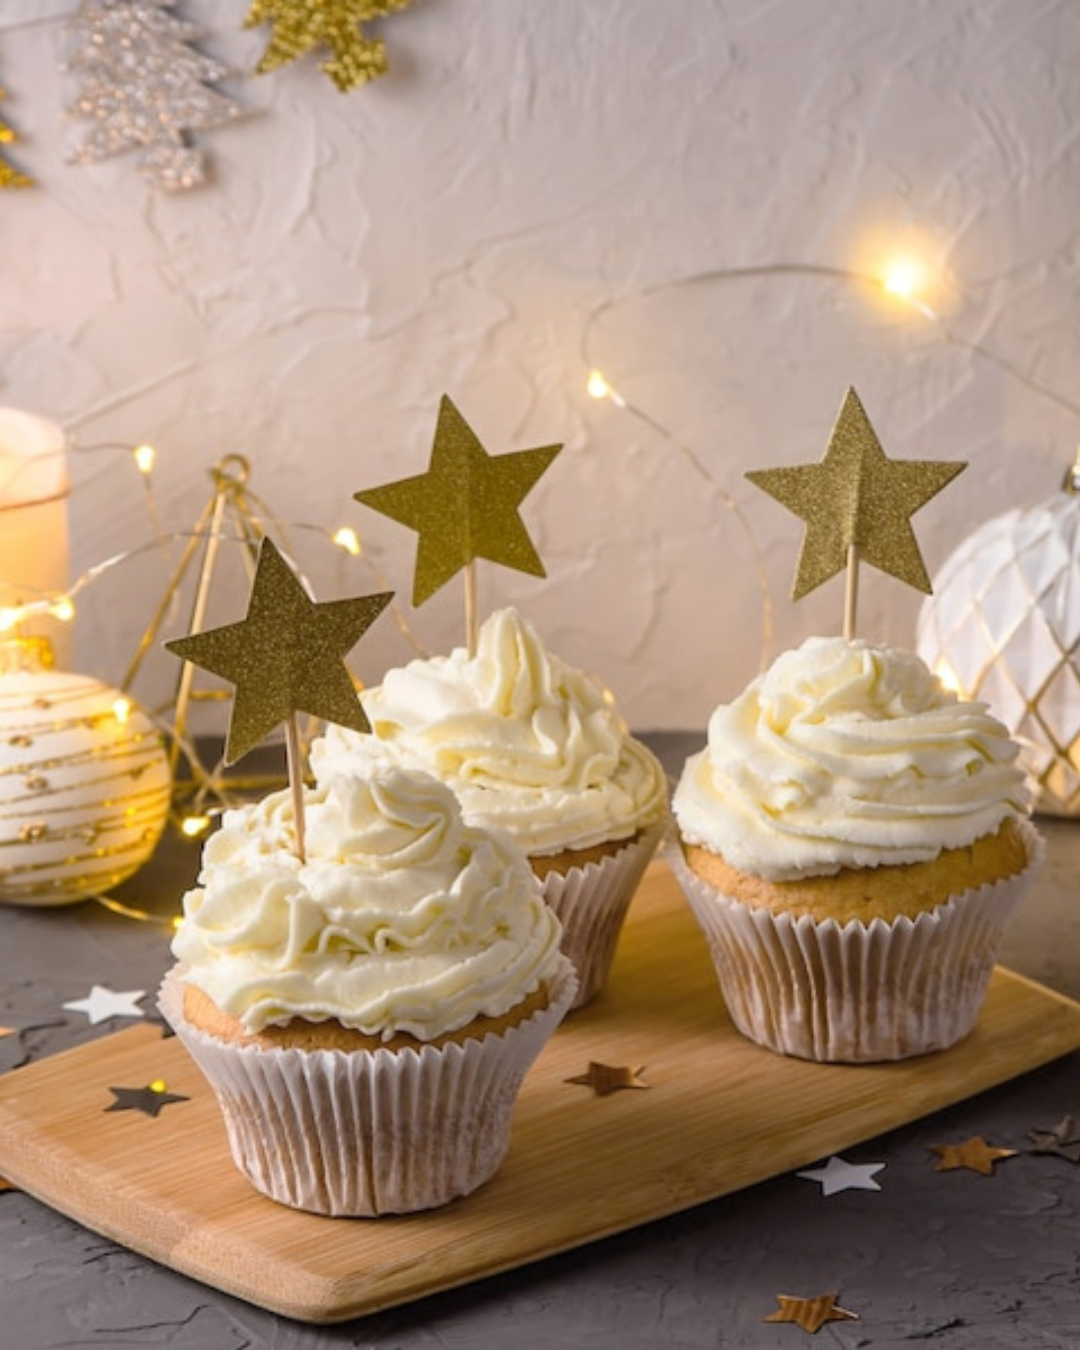 Confira 18 inspirações de cupcakes decorados para o natal